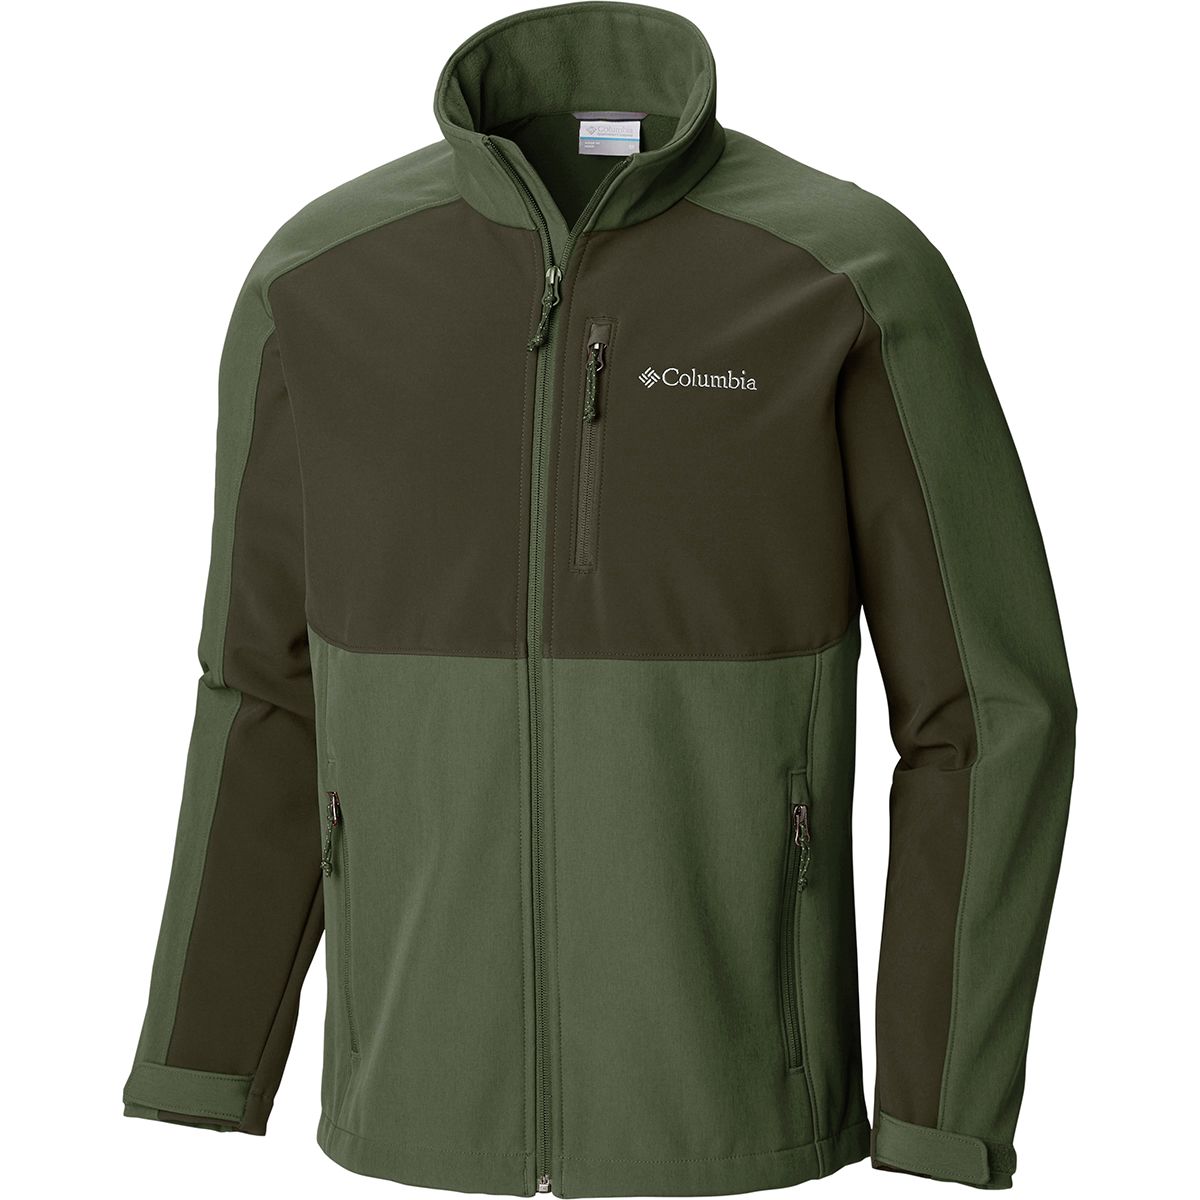 Columbia Ryton Reserve Softshell Jacket - Men's - Clothing